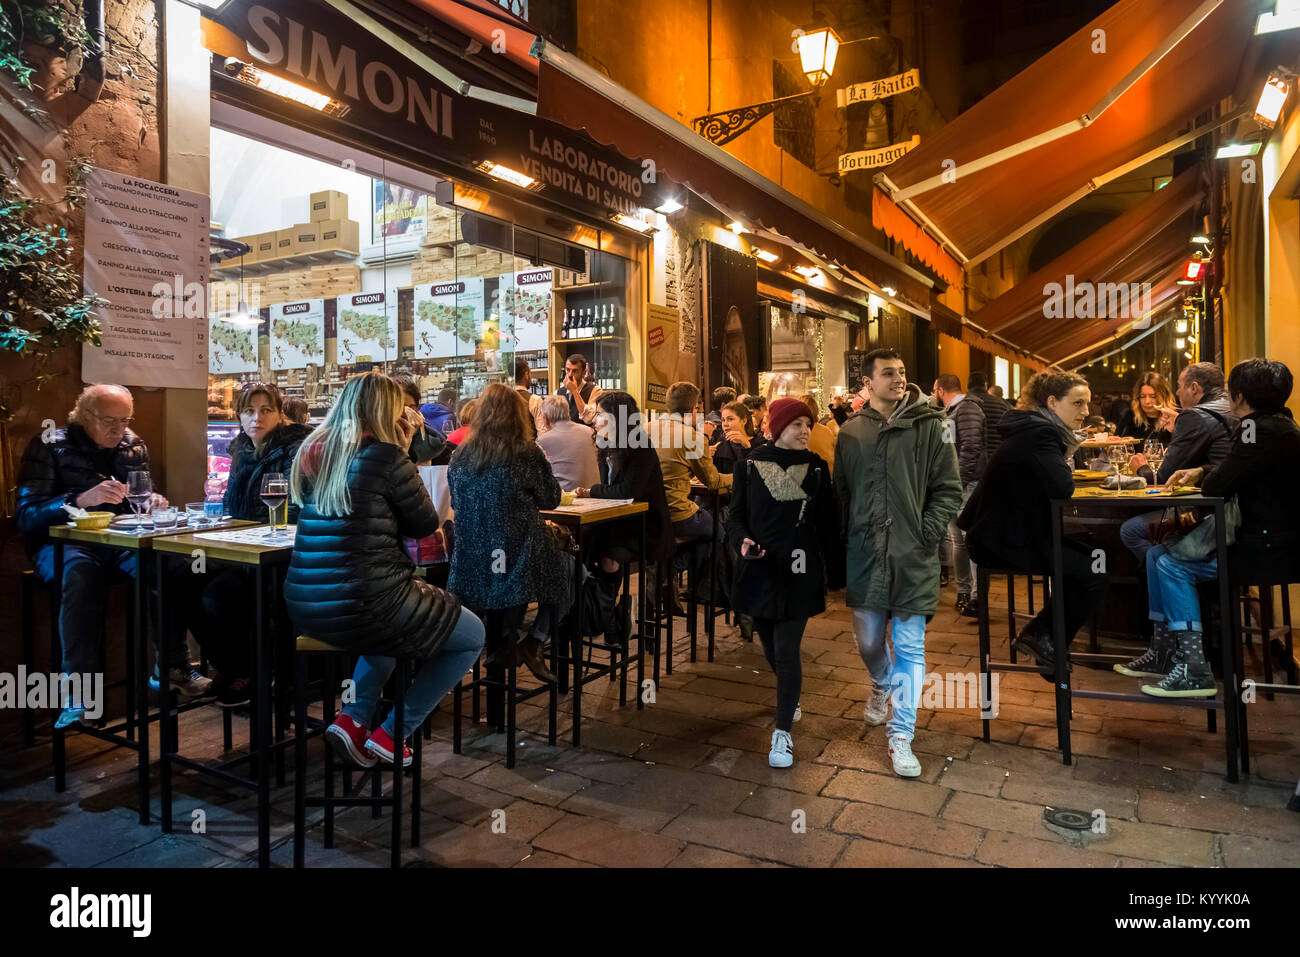 Bologna, Italia - la gente fuori per la sera per mangiare e bere nei caffè e nei ristoranti Via Pescherie Vecchie, la città di Bologna Foto Stock